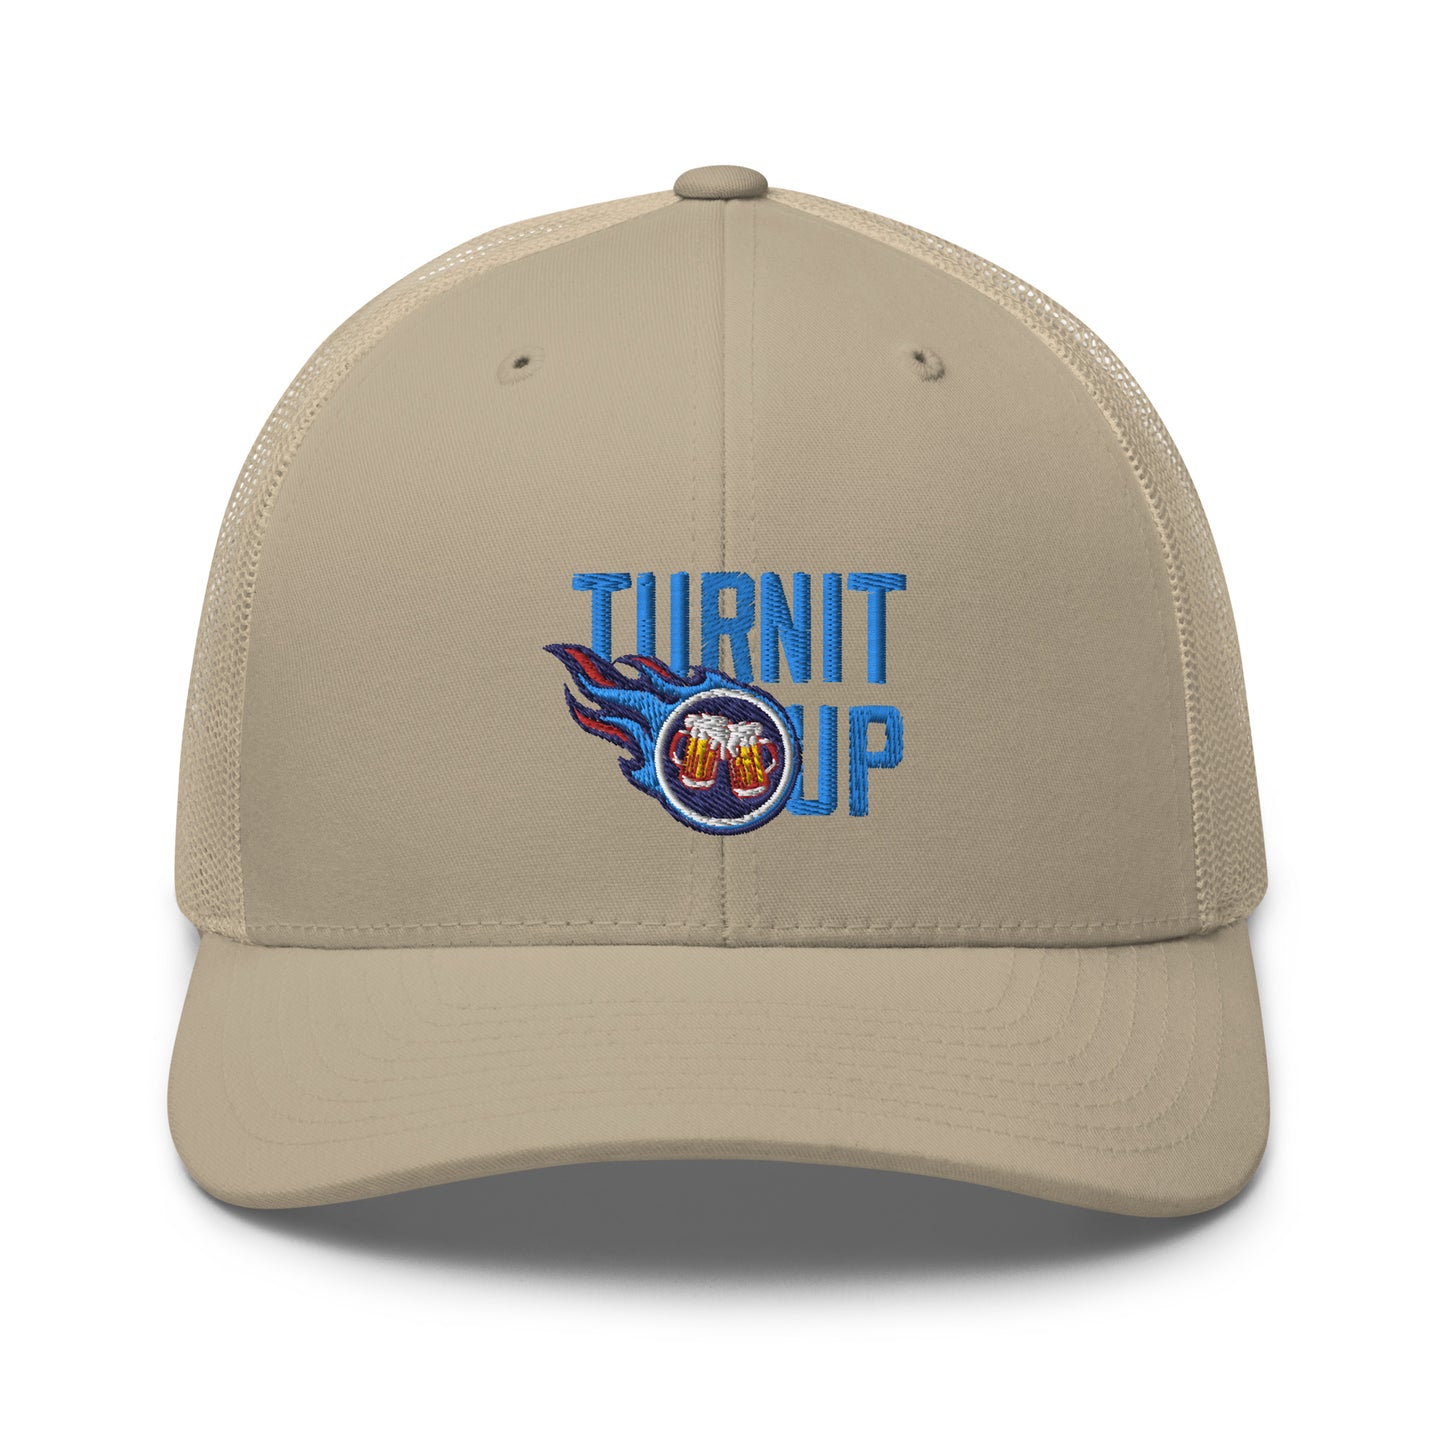 Turn It Up Trucker Cap